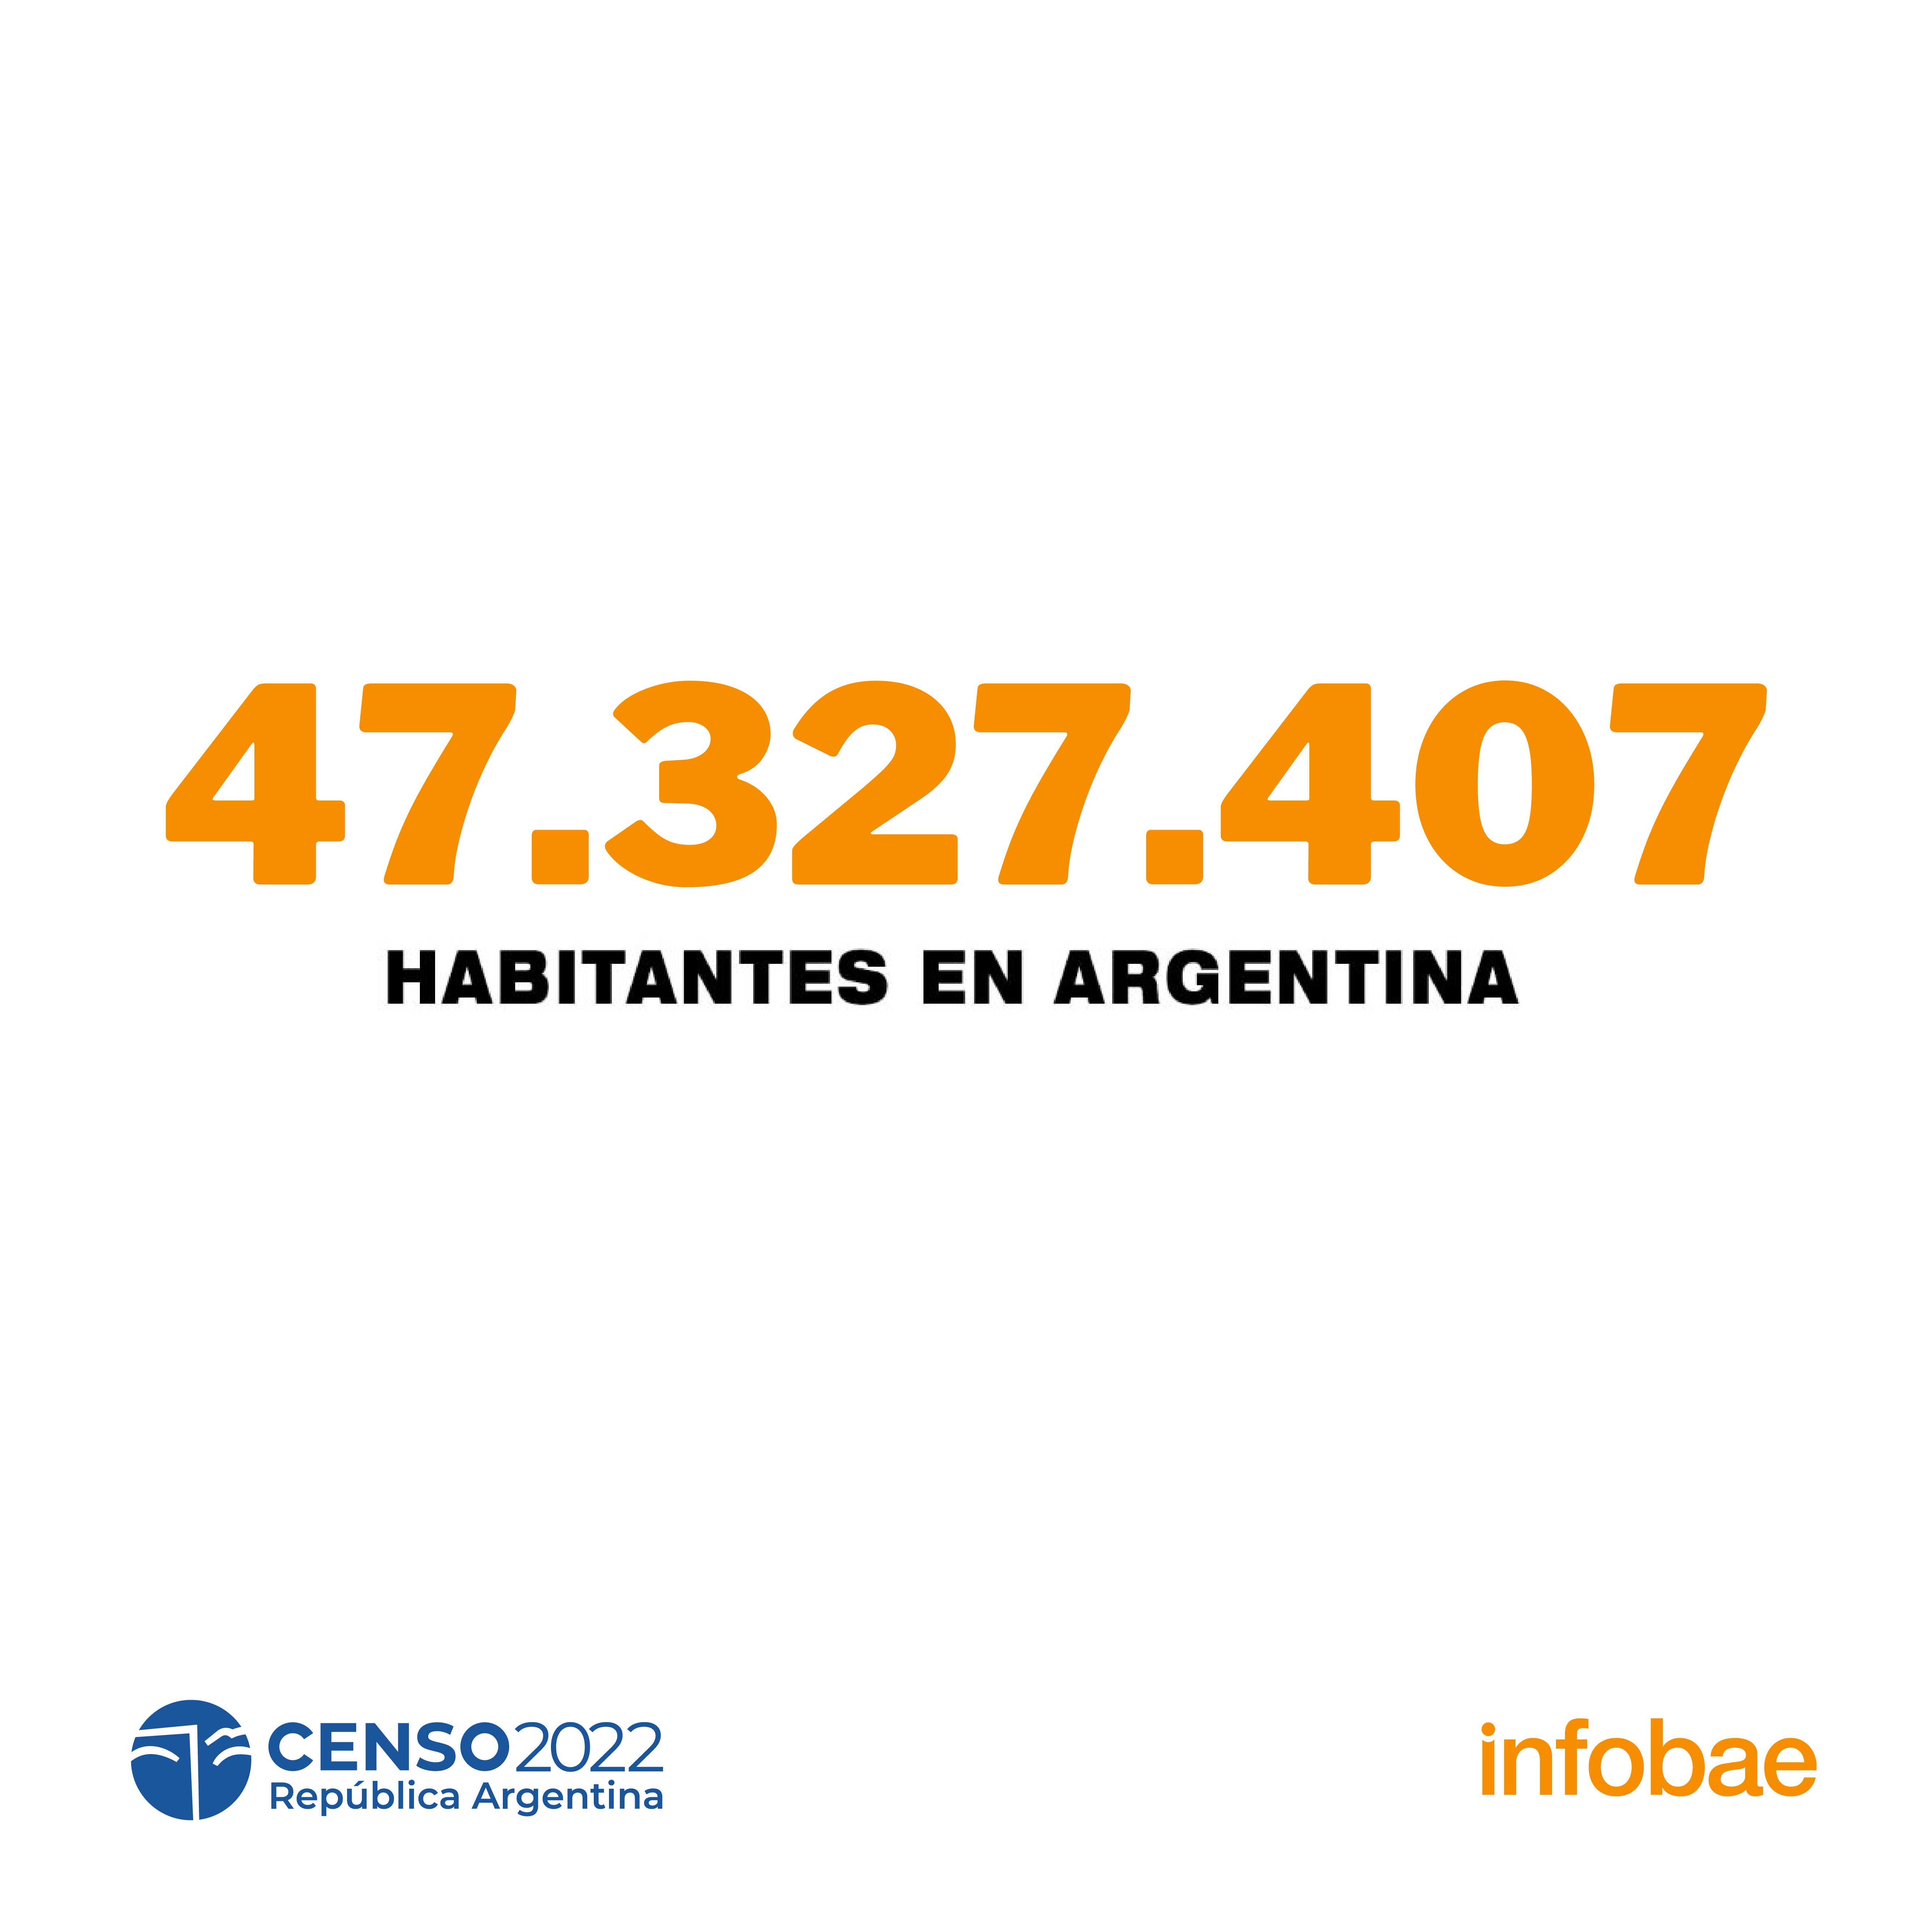 Primeros datos provisorios del Censo 2022: Argentina tiene 47.327.407 habitantes